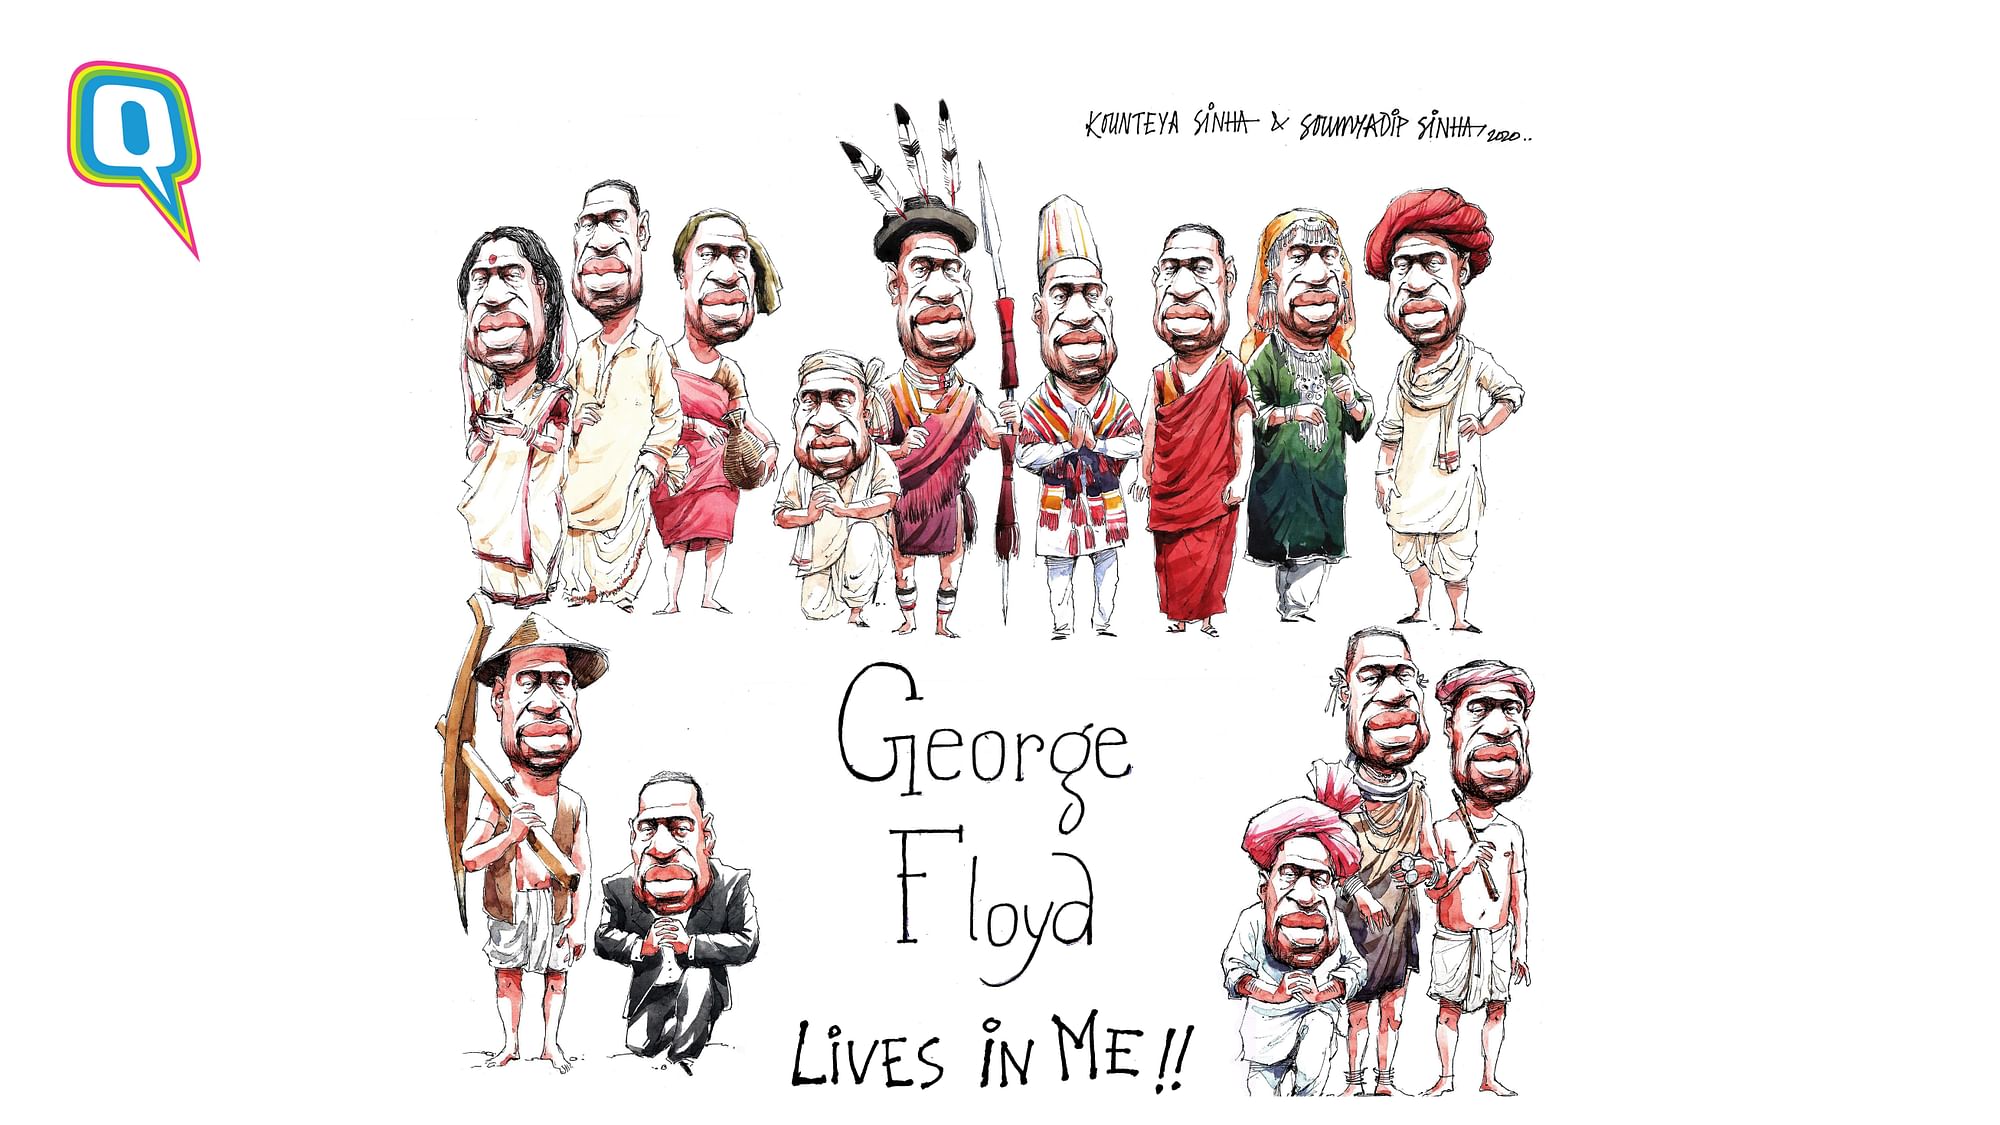 George Floyd lives in me.